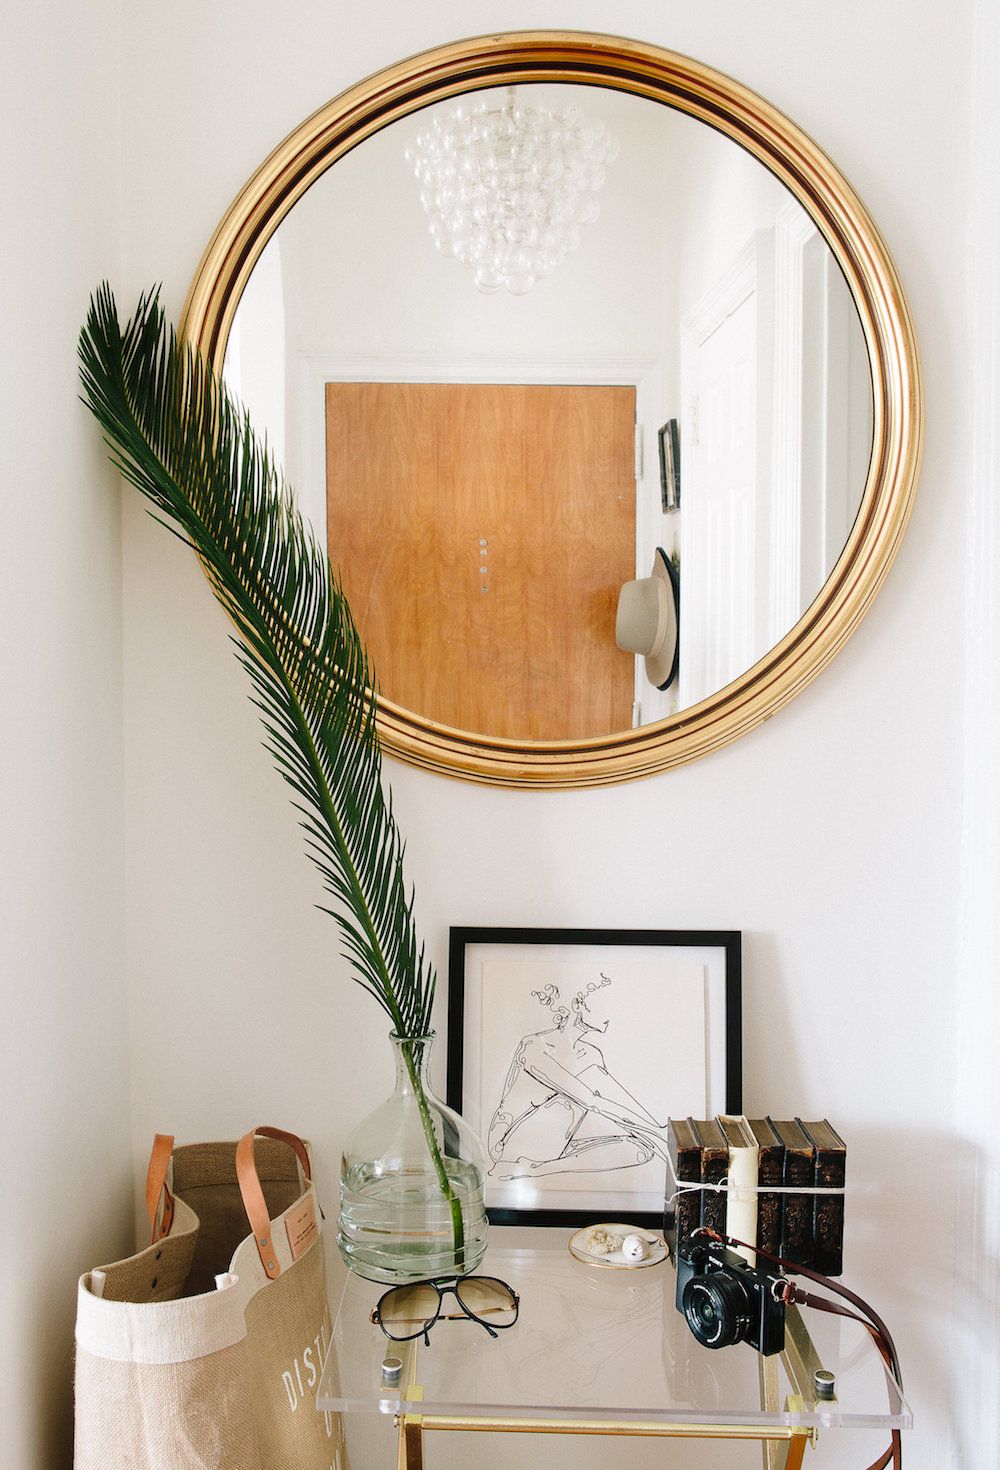 Lối vào căn hộ xinh xắn, với chiếc đèn chùm bong bóng thủy tinh phản chiếu qua tấm gương tròn treo tường. Trên chiếc bàn nhỏ đặt vài phụ kiện, món đồ nhỏ xinh và nhánh lá mềm mại.